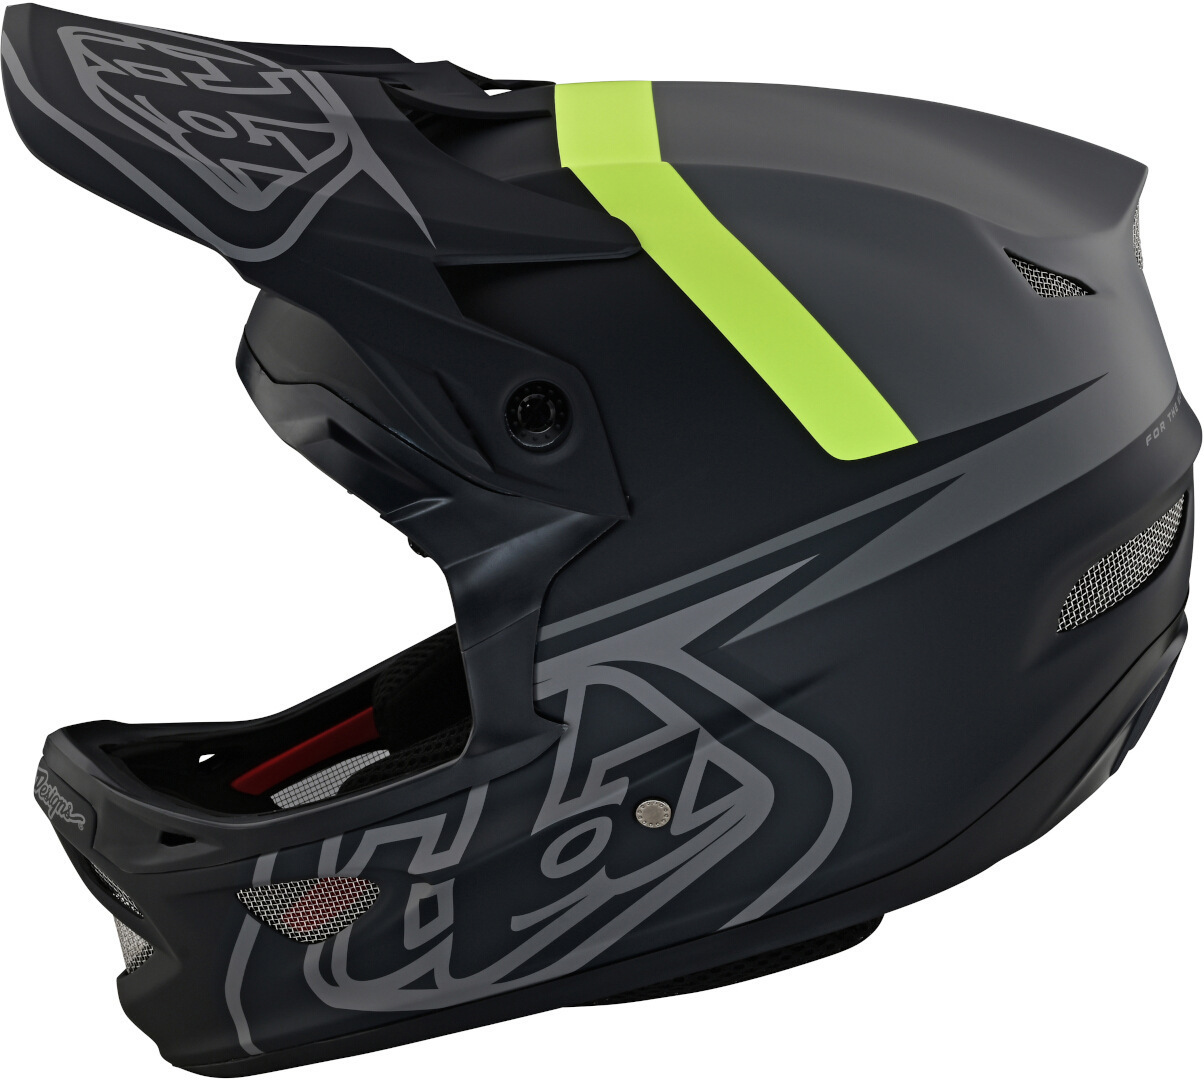 Шлем Troy Lee Designs D3 Fiberlite Slant для скоростного спуска, антрацитовый/зеленый